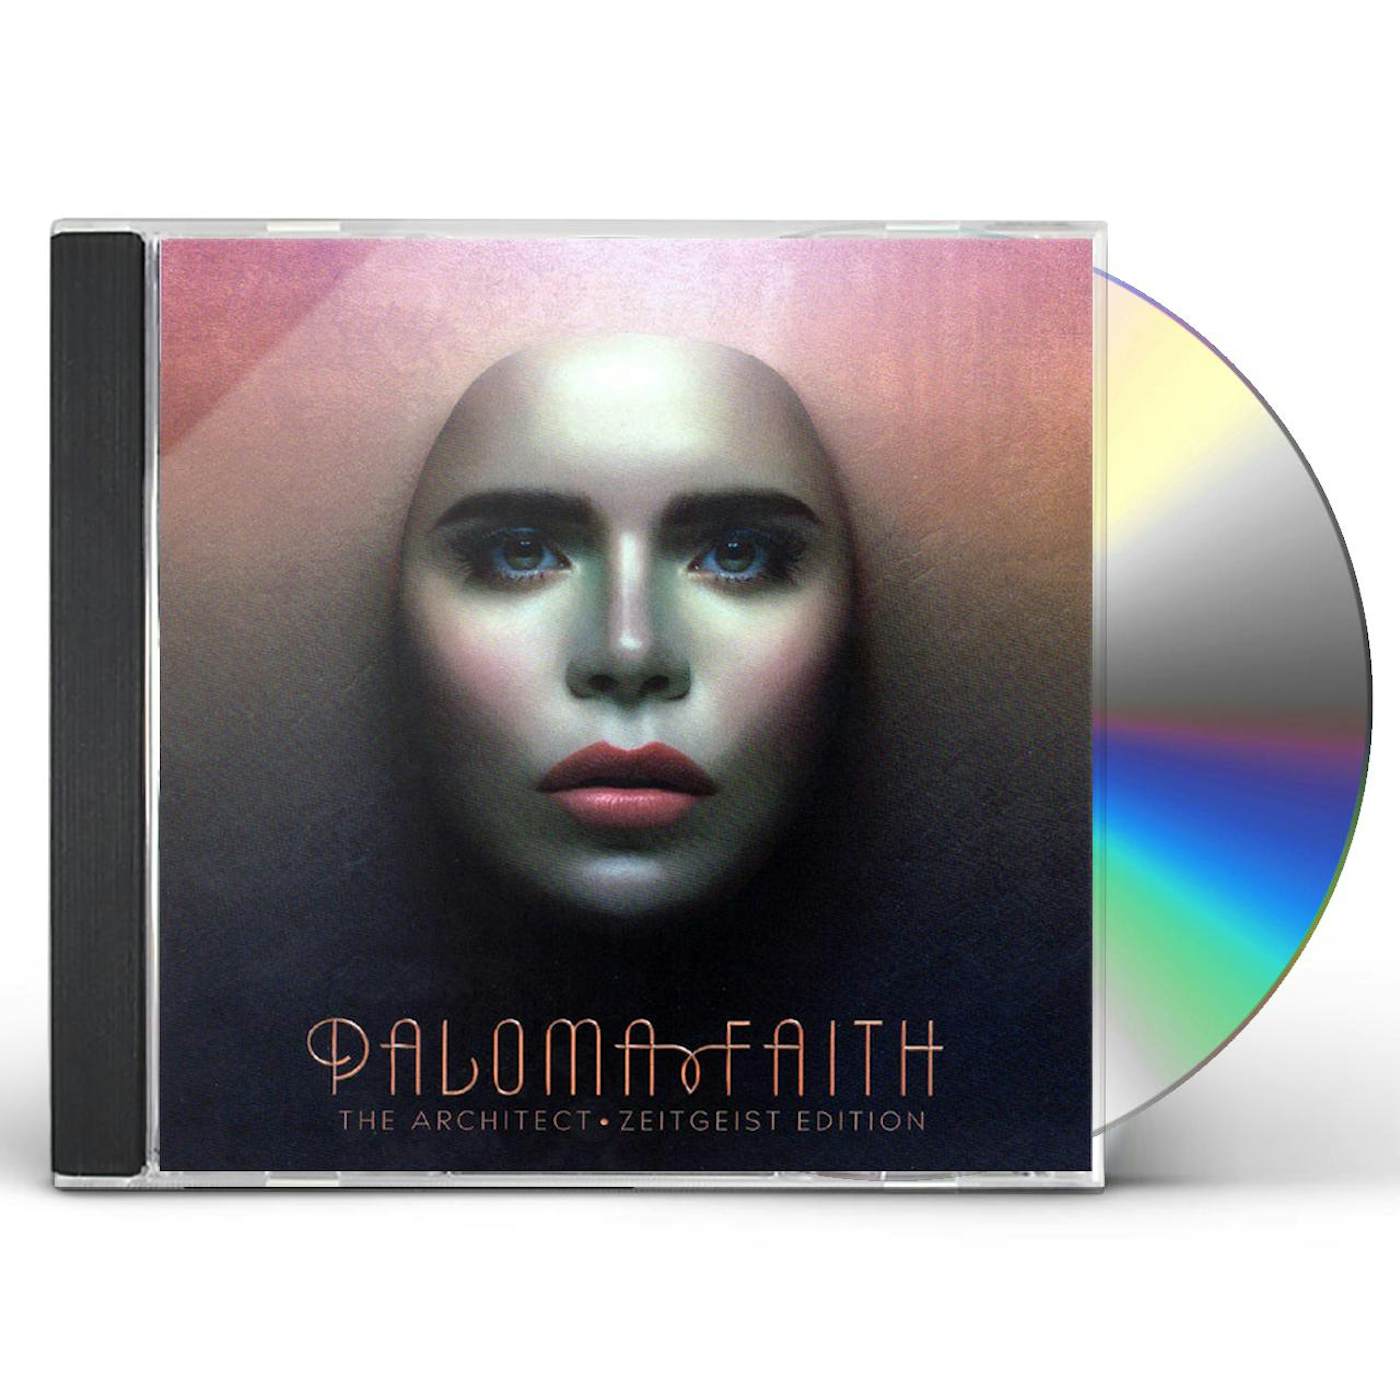 Paloma Faith ARCHITECT (ZEITGEIST EDITION) CD